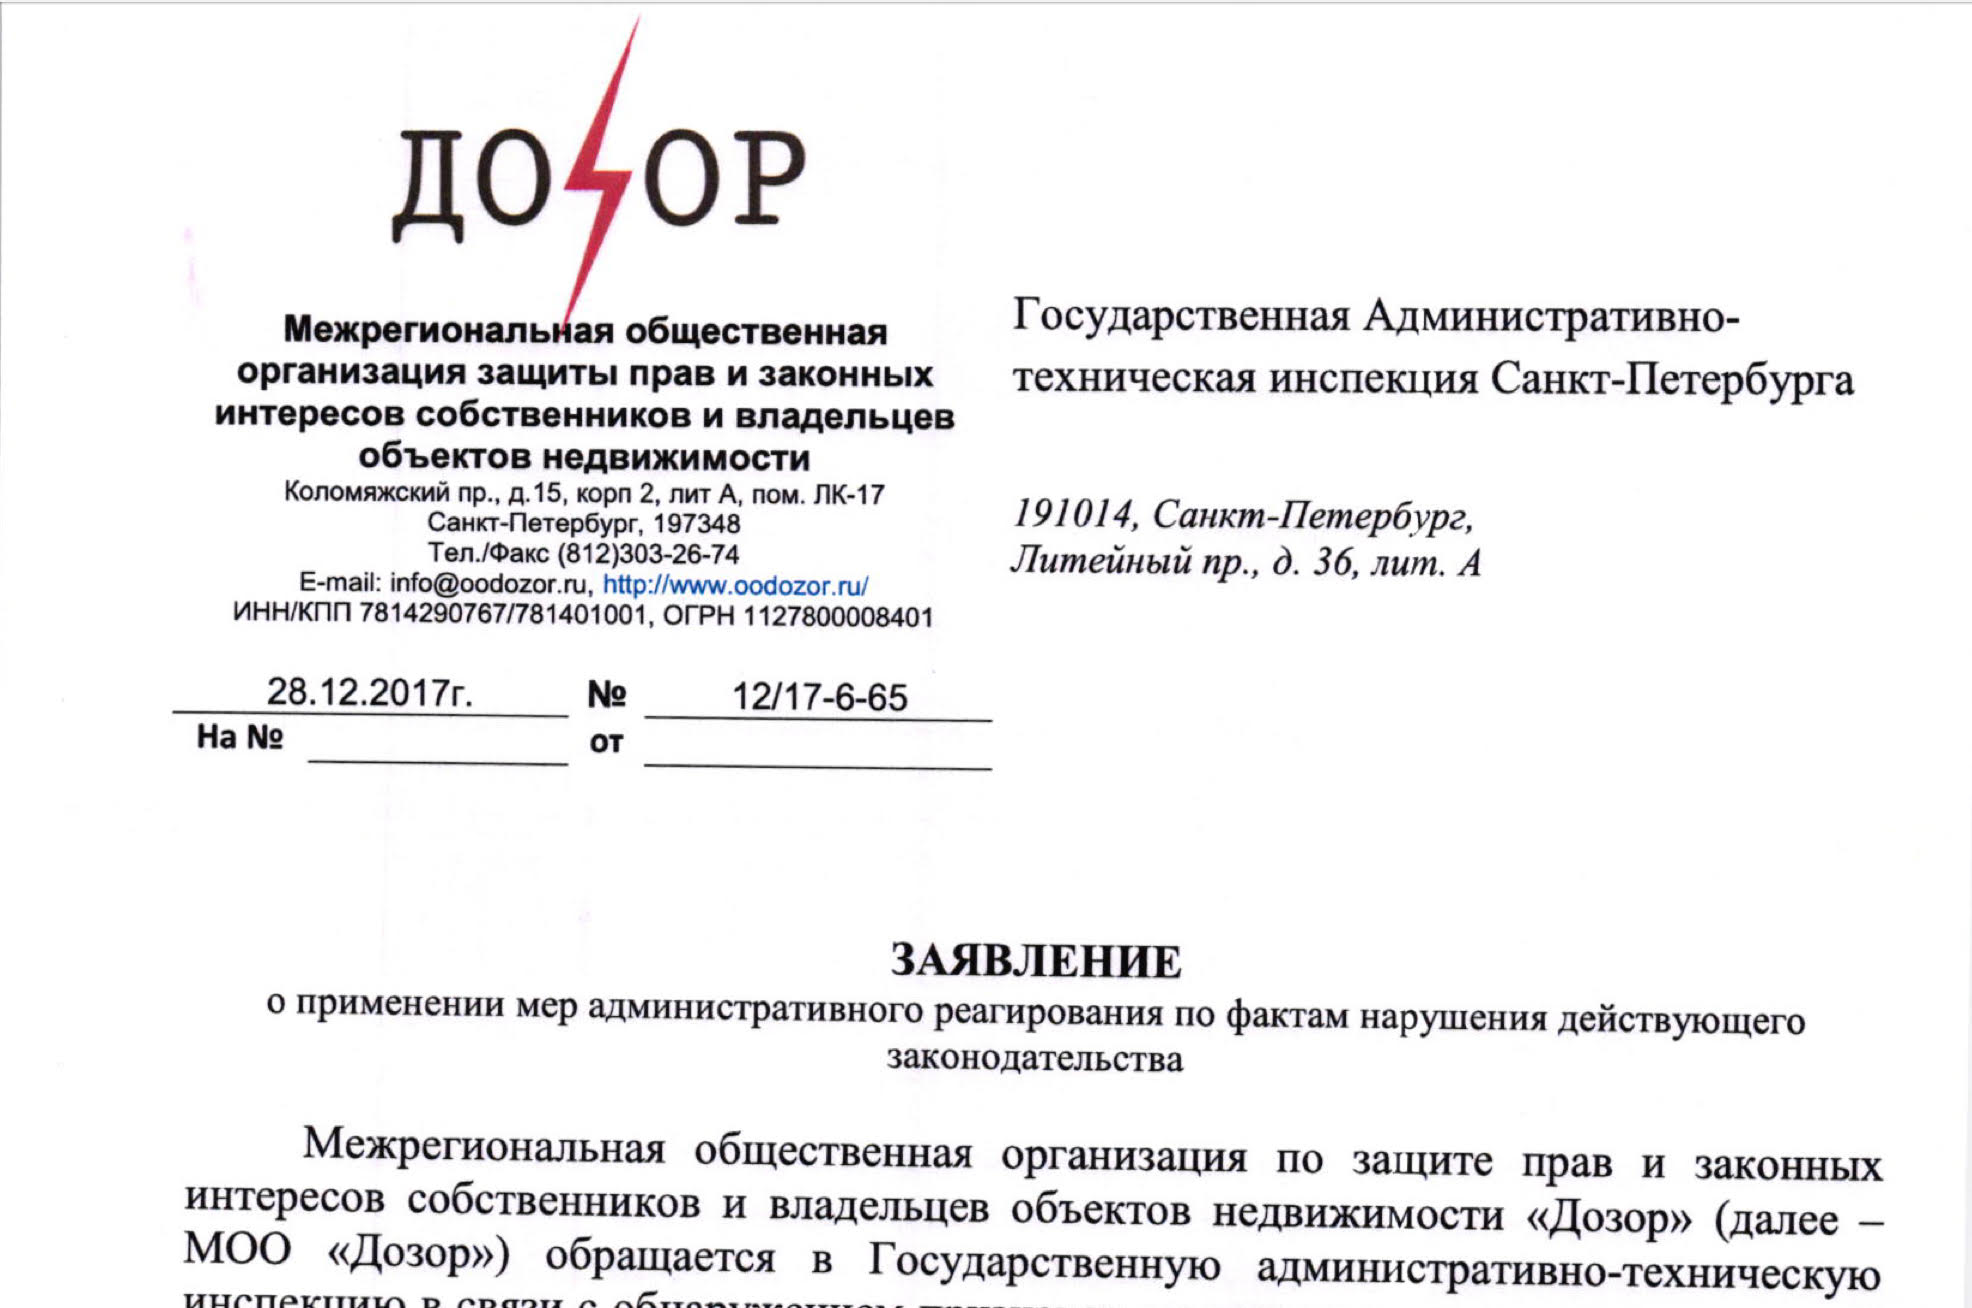 Заявление в ГАТИ Санкт-Петербурга о применении мер административного реагирования по фактам нарушения действующего законодательства.